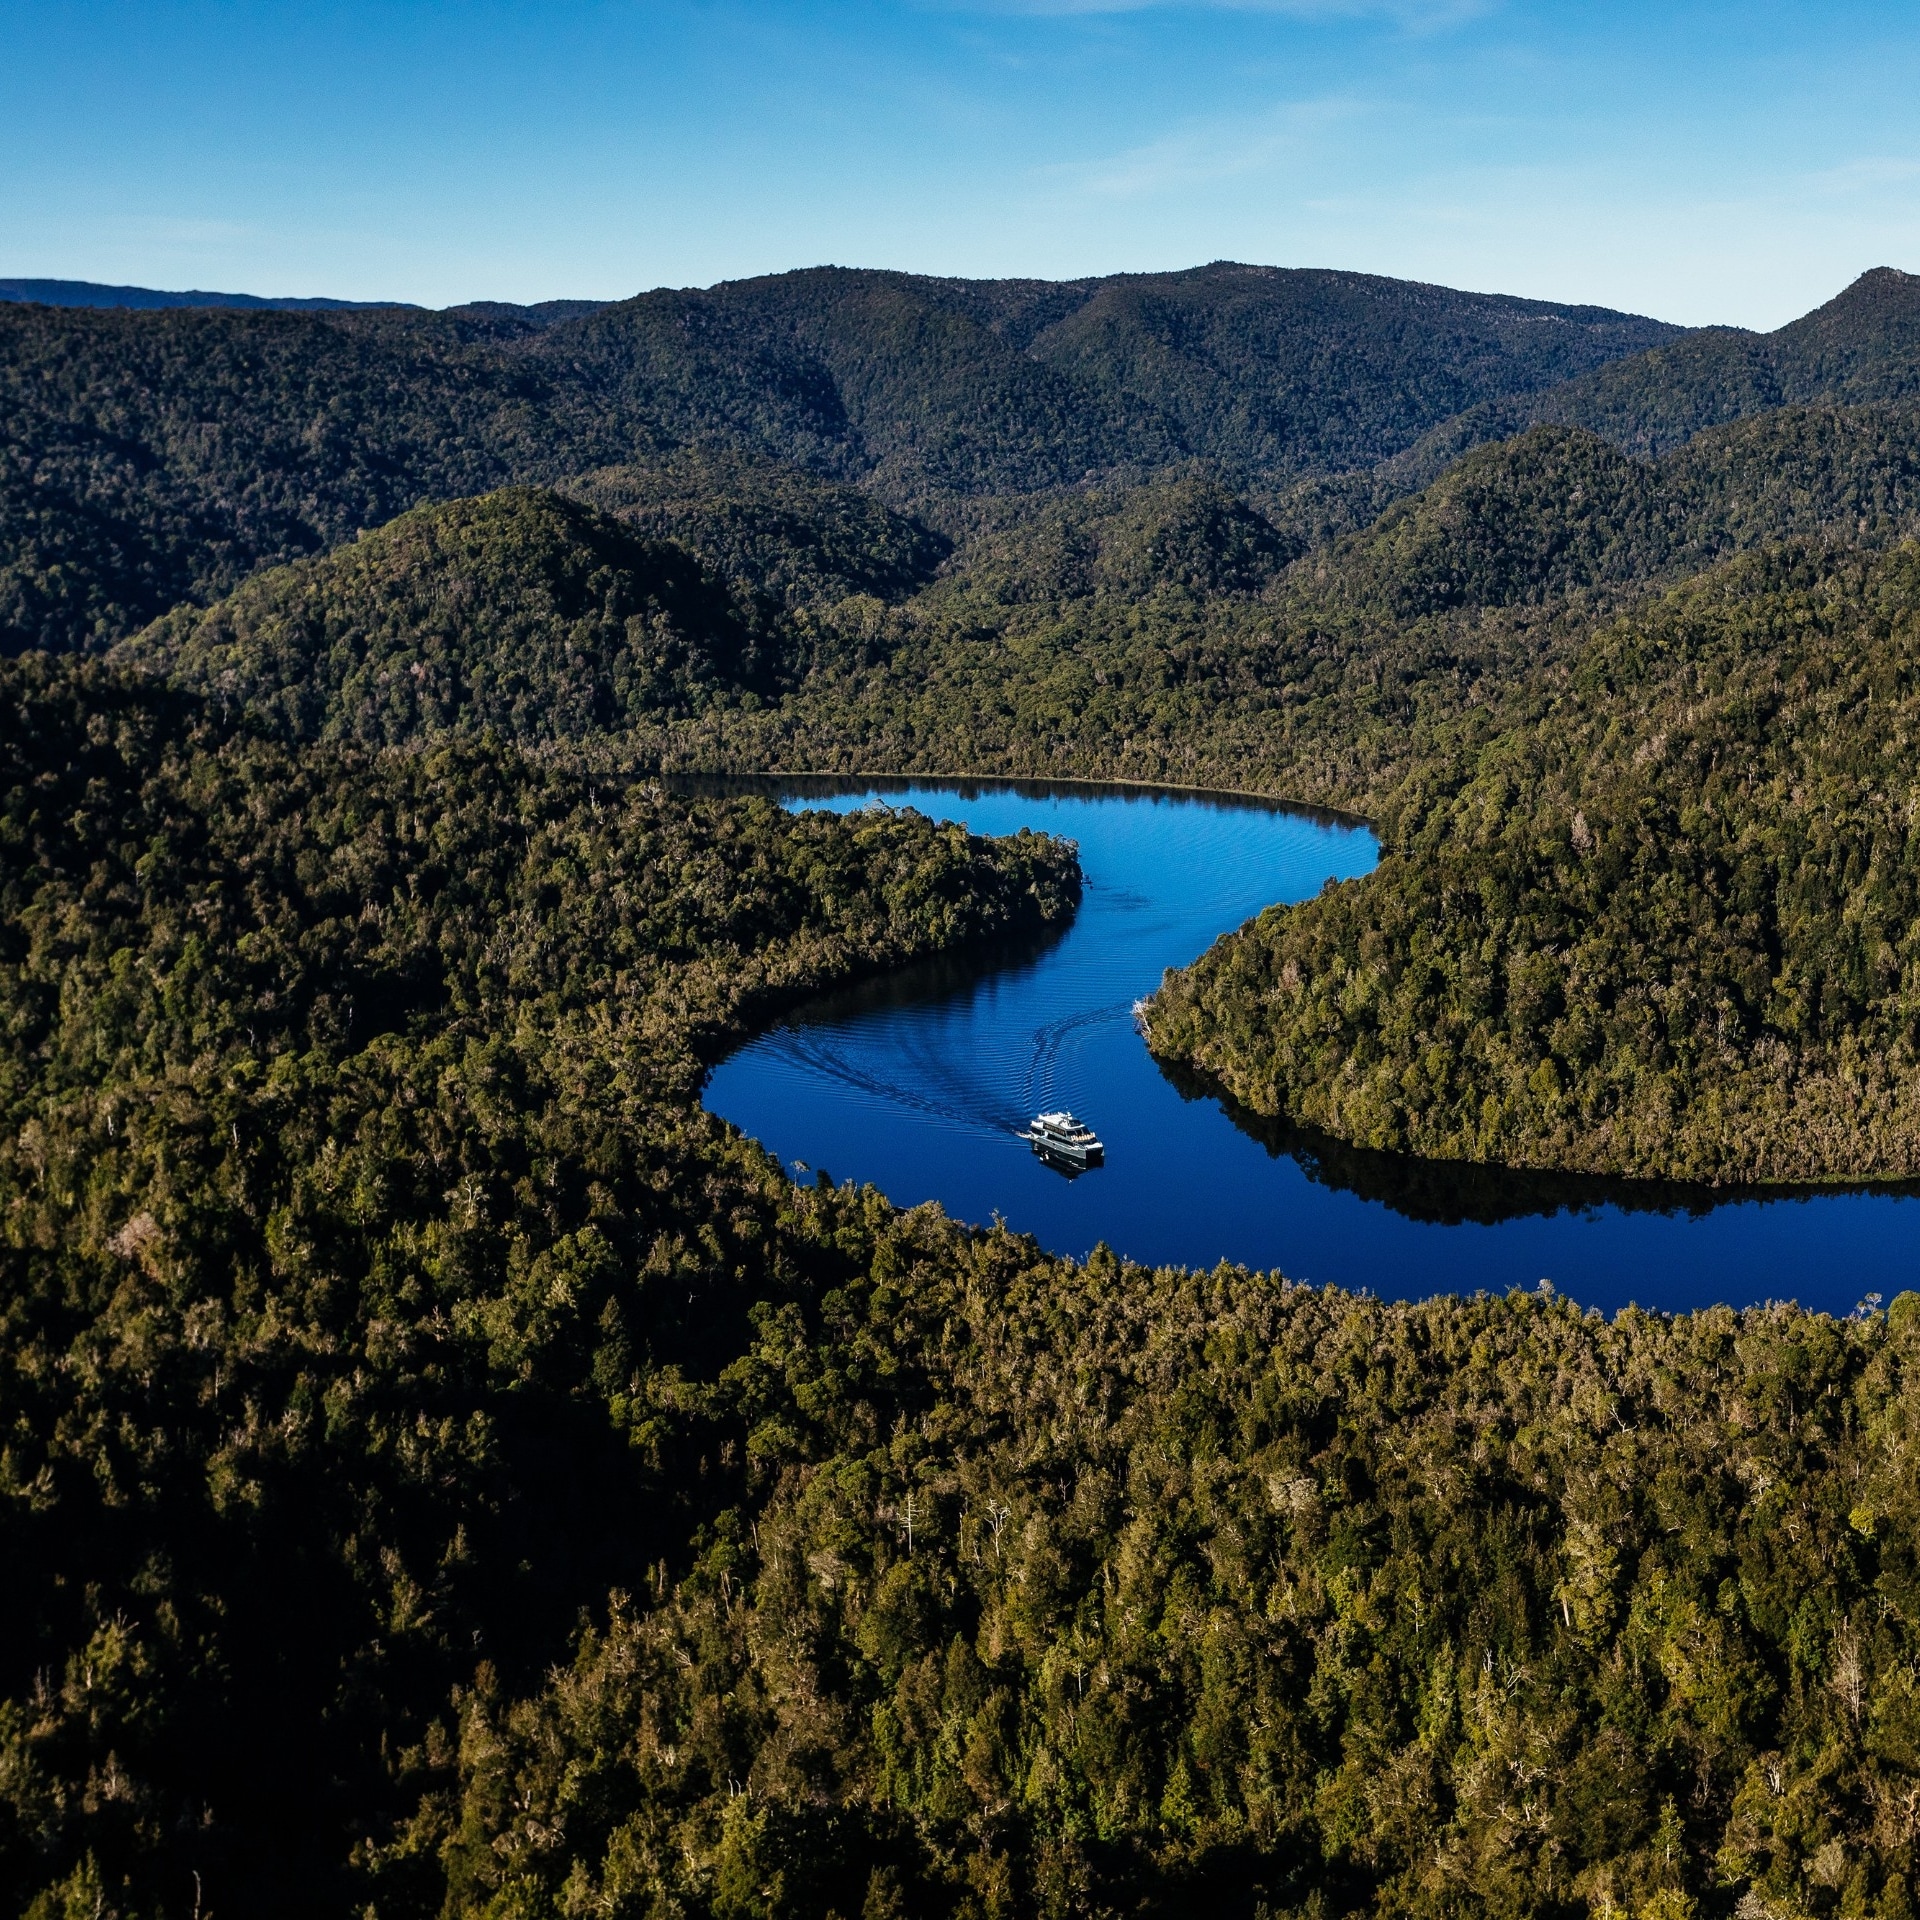  フランクリン － ゴードン・ワイルド・リバーズ国立公園でゴードン川を下るボート © Tourism Tasmania